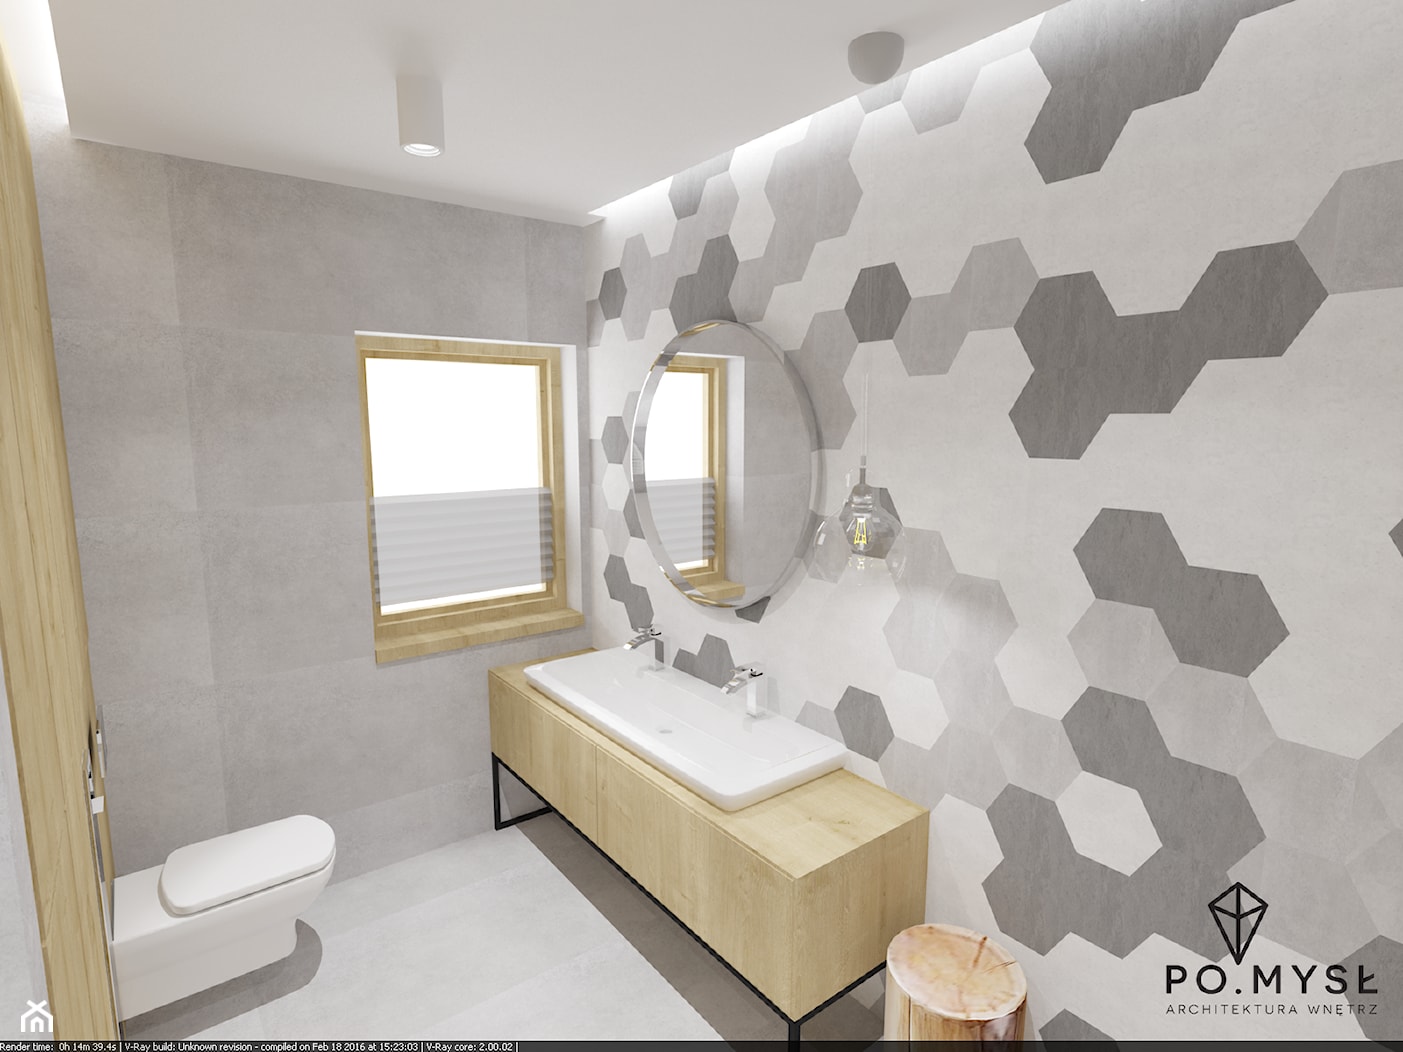 Płytki heksagonalne w łazience. - zdjęcie od PO.MYSŁ - Homebook